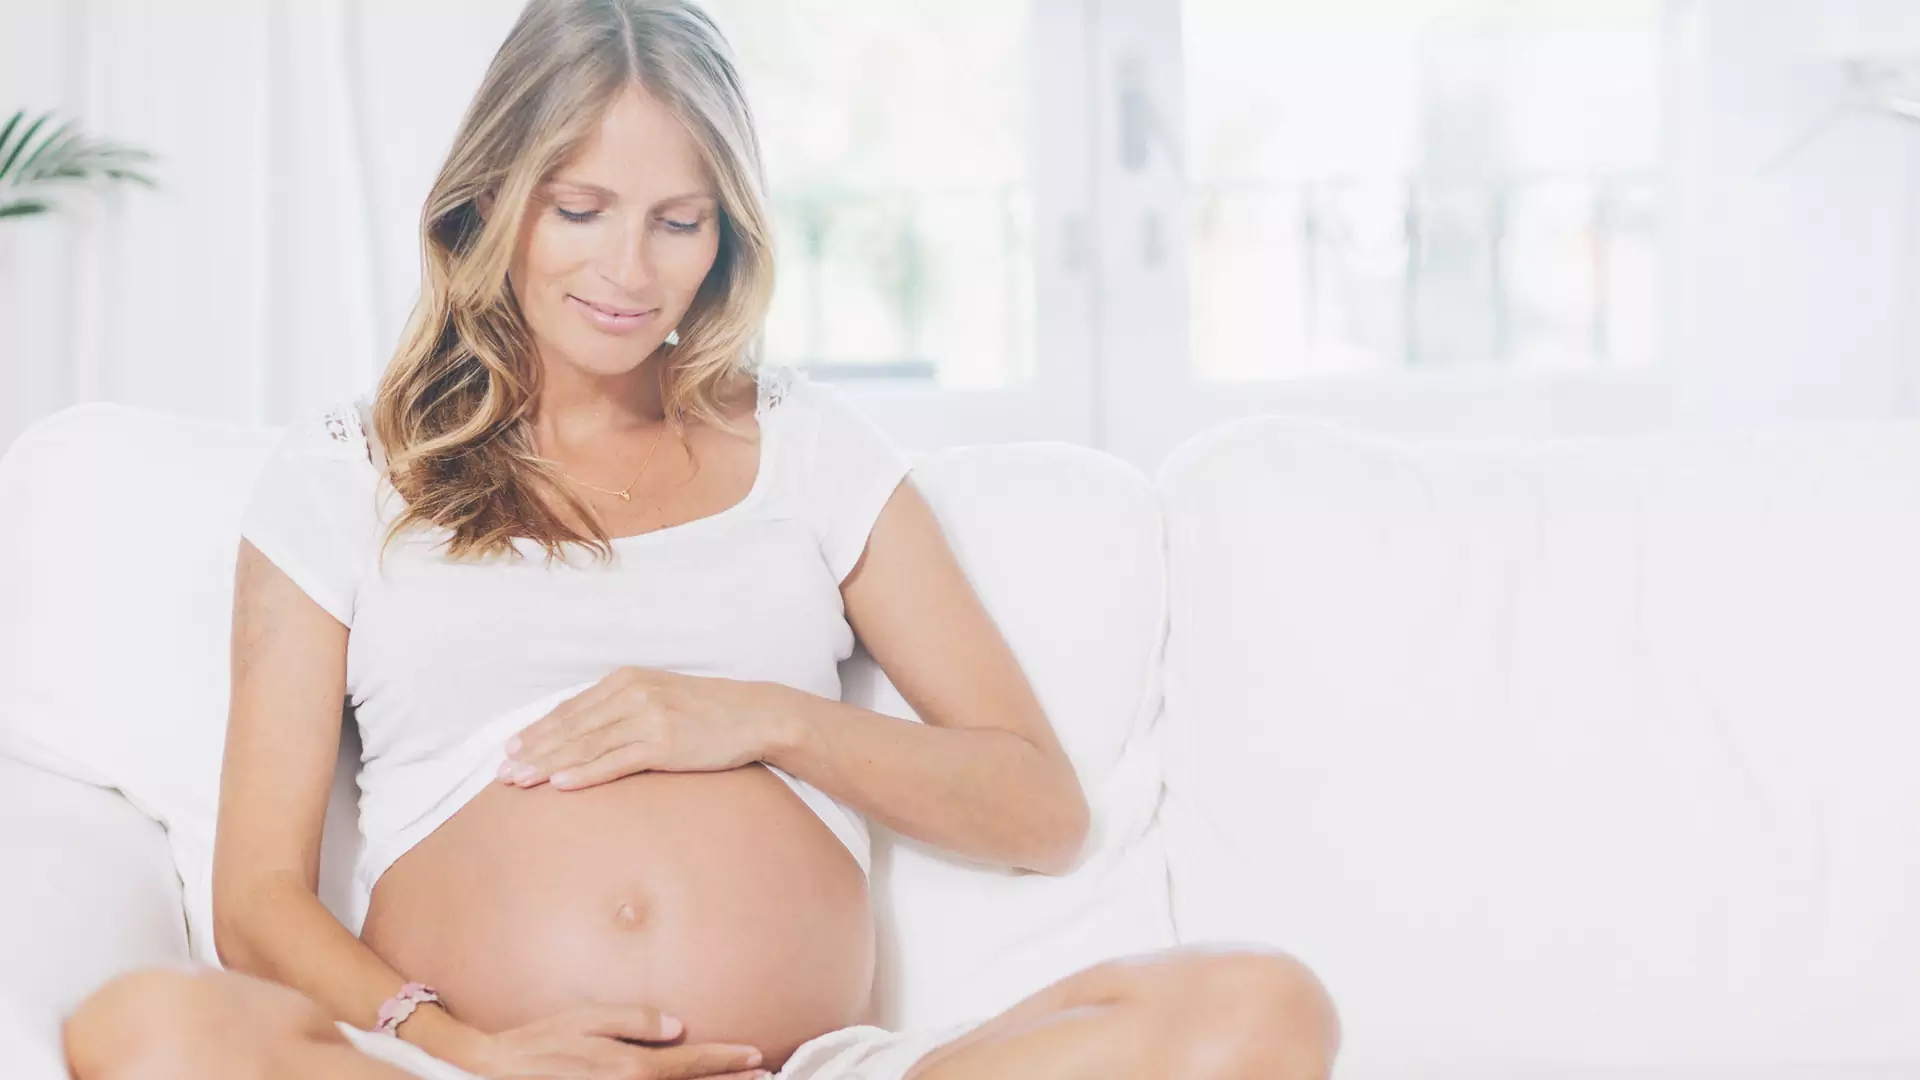 20 tydzień ciąży - półmetek! Pora na USG połówkowe